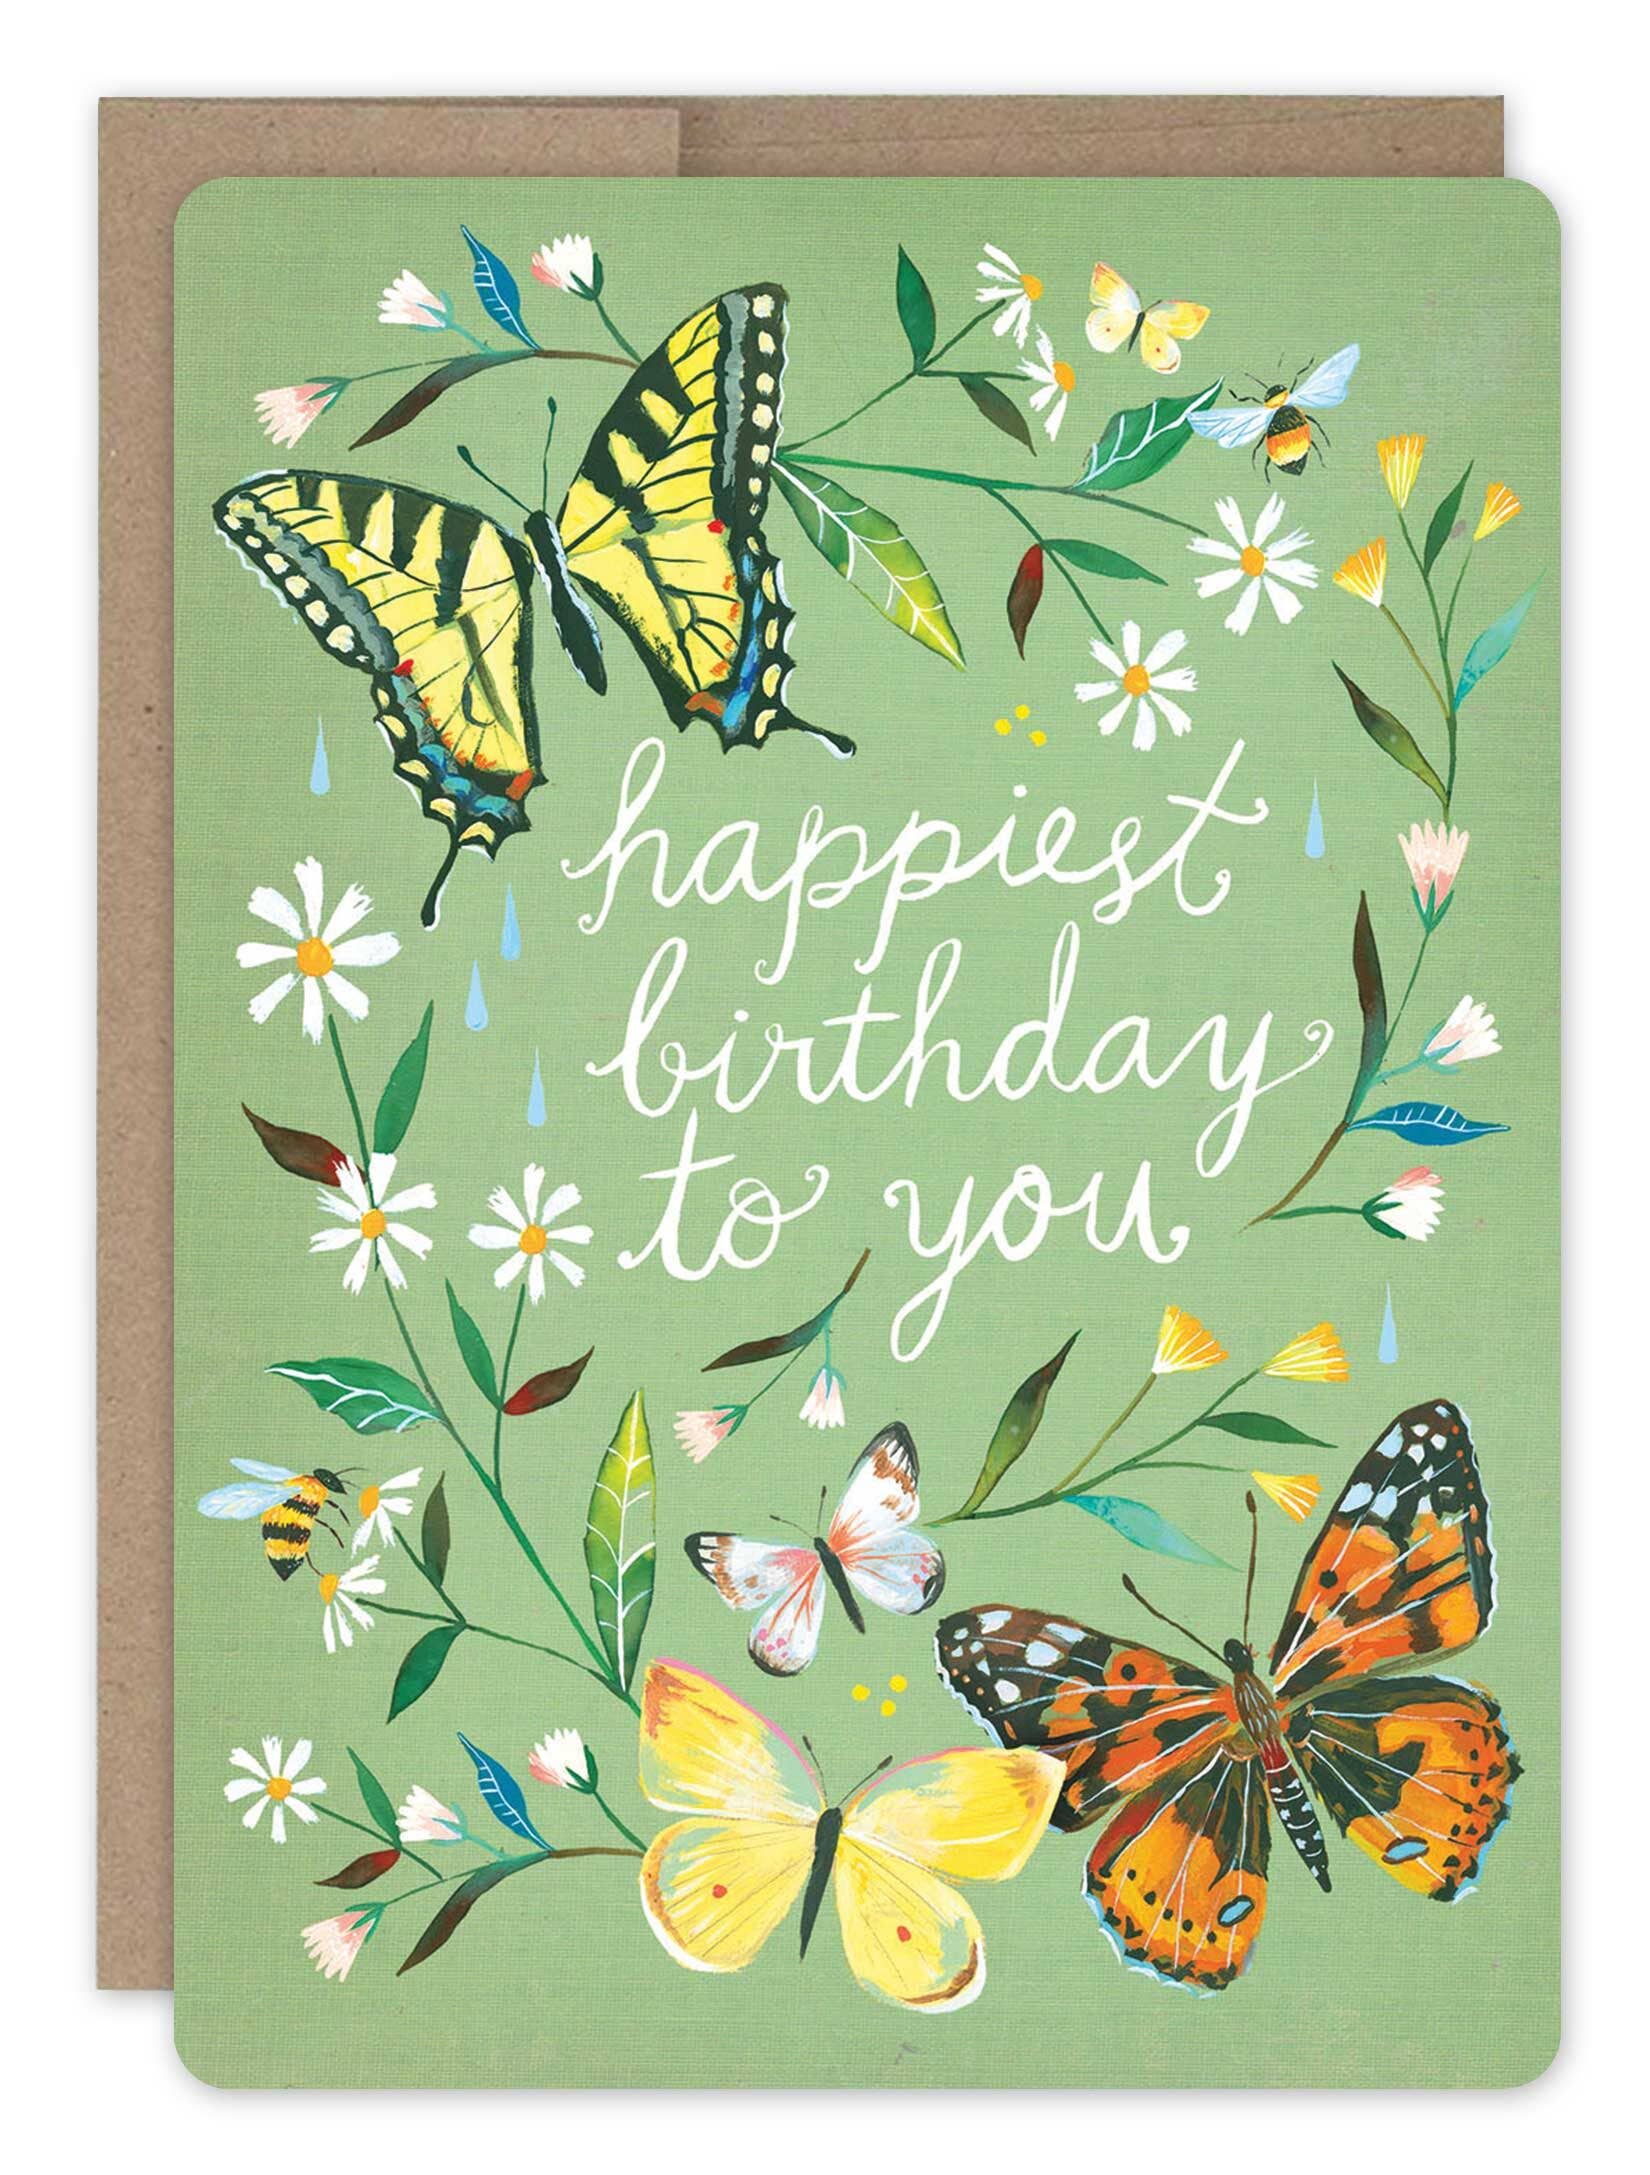 Biely & Shoaf - Happiest Birthday Card